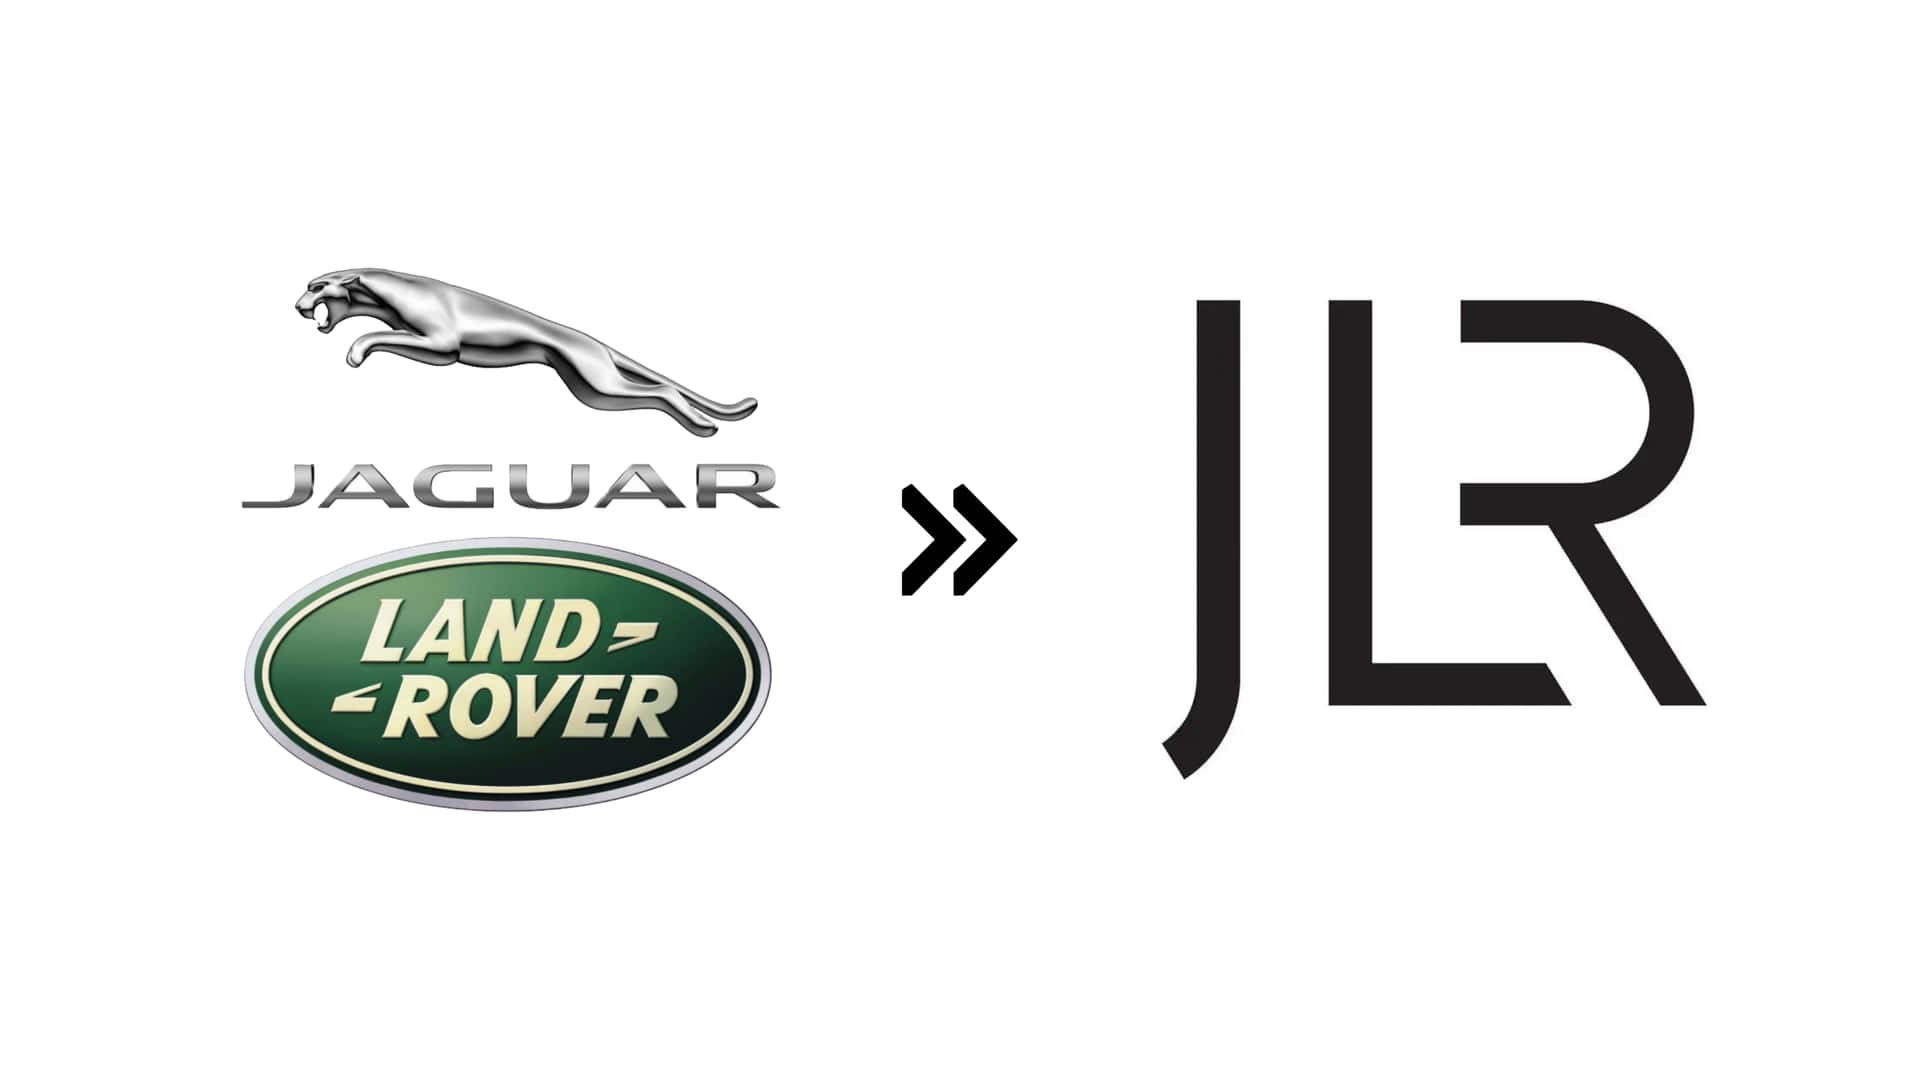 Mọi thương hiệu vừa có logo mới: Cadillac, Porsche, Jaguar Land Rover và hàng loạt các thương hiệu lớn 'thay máu' ra sao? - Ảnh 9.